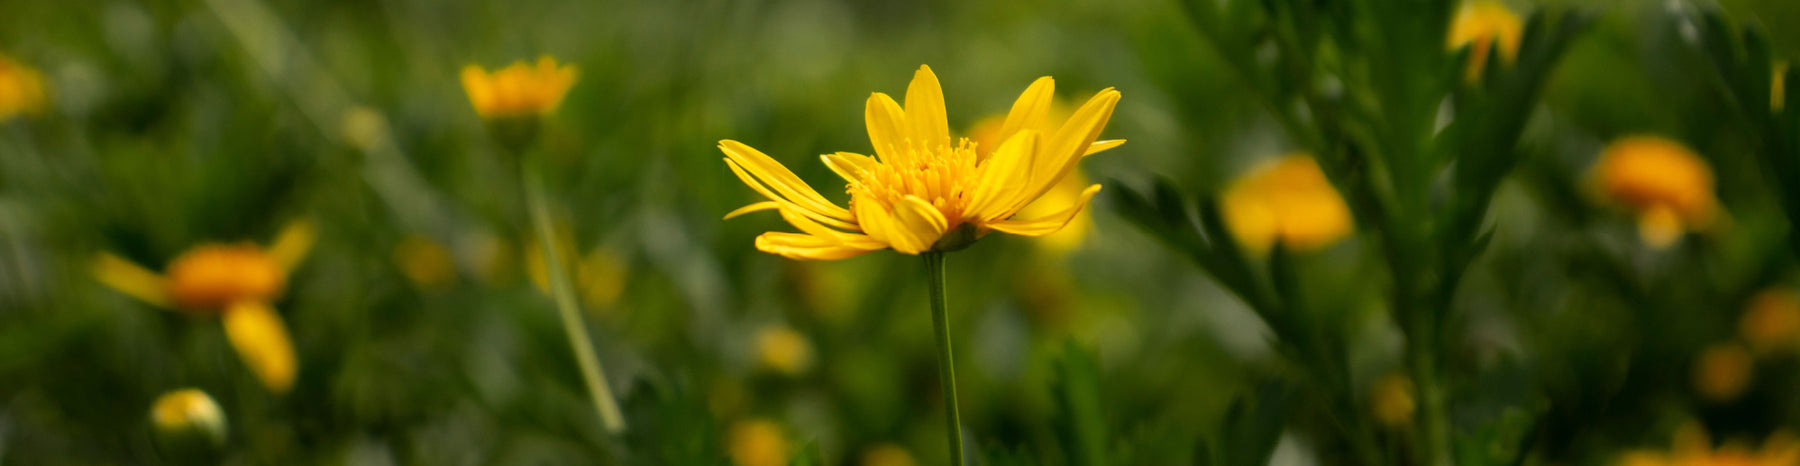 arnica montana flower in field